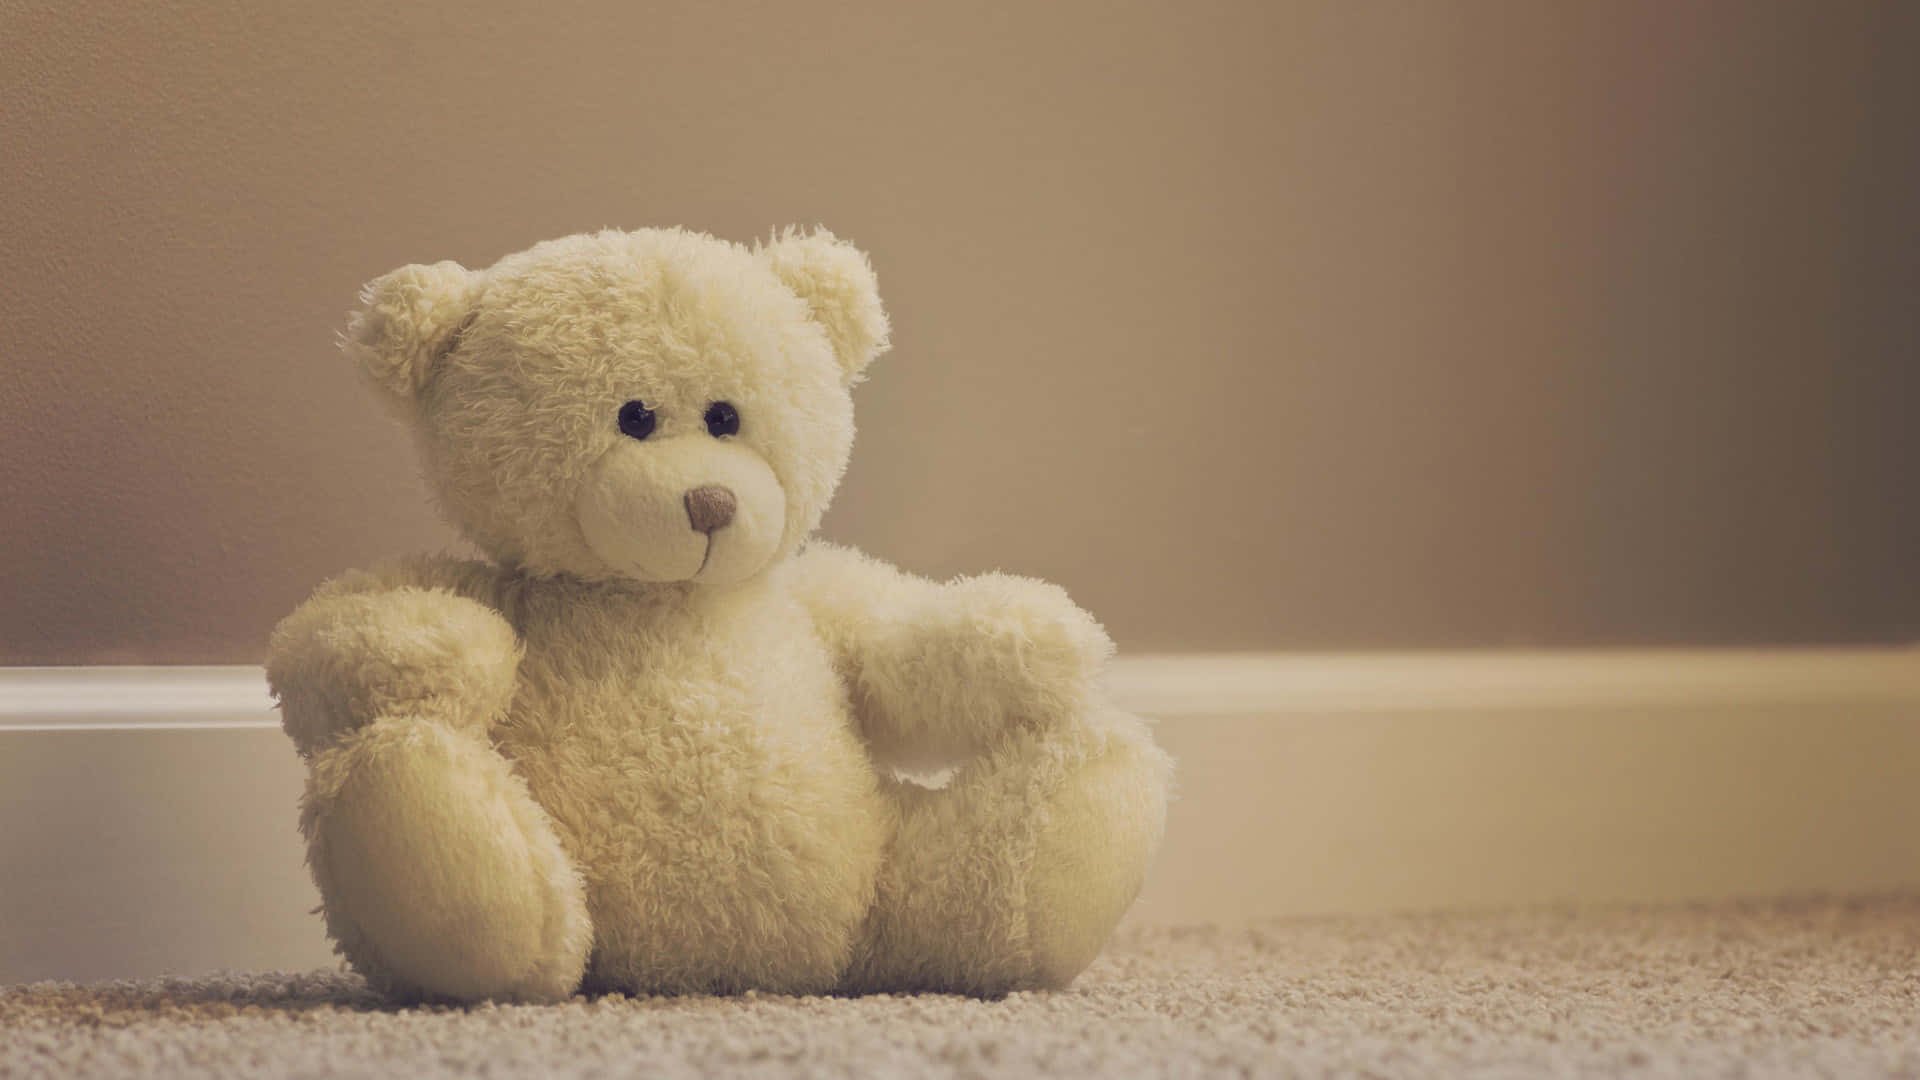 A Teddy Bear Sitting On The Floor